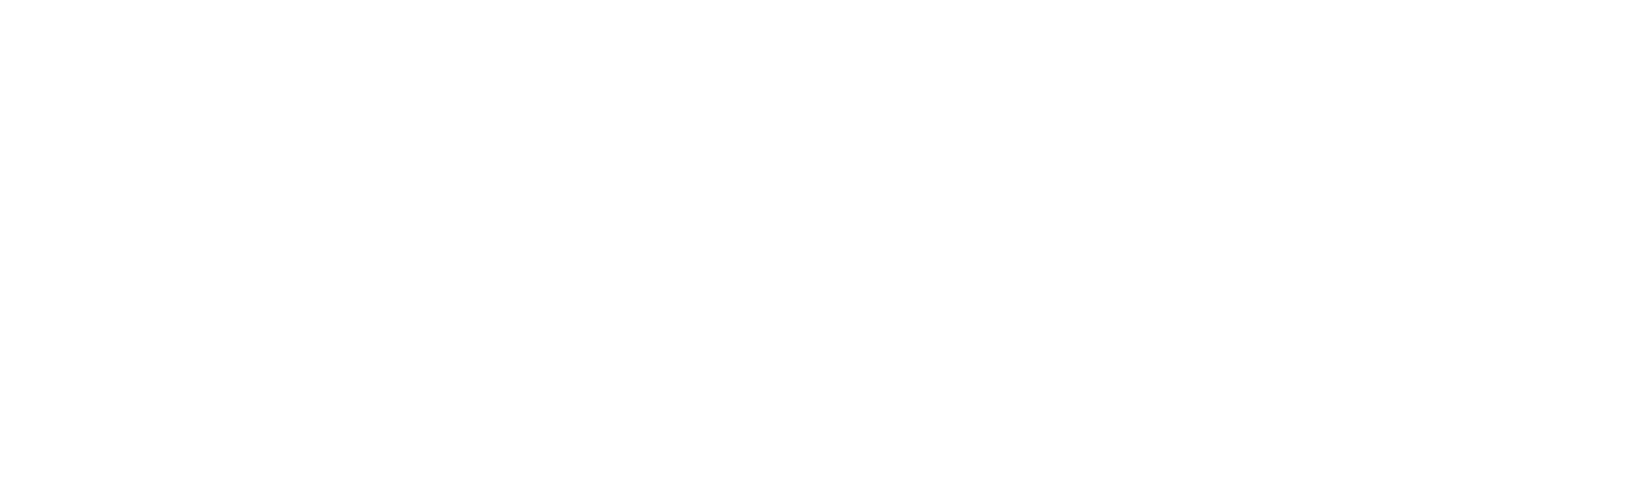 johannes-hospitium-logo-25jaar-rgb-v2-diap